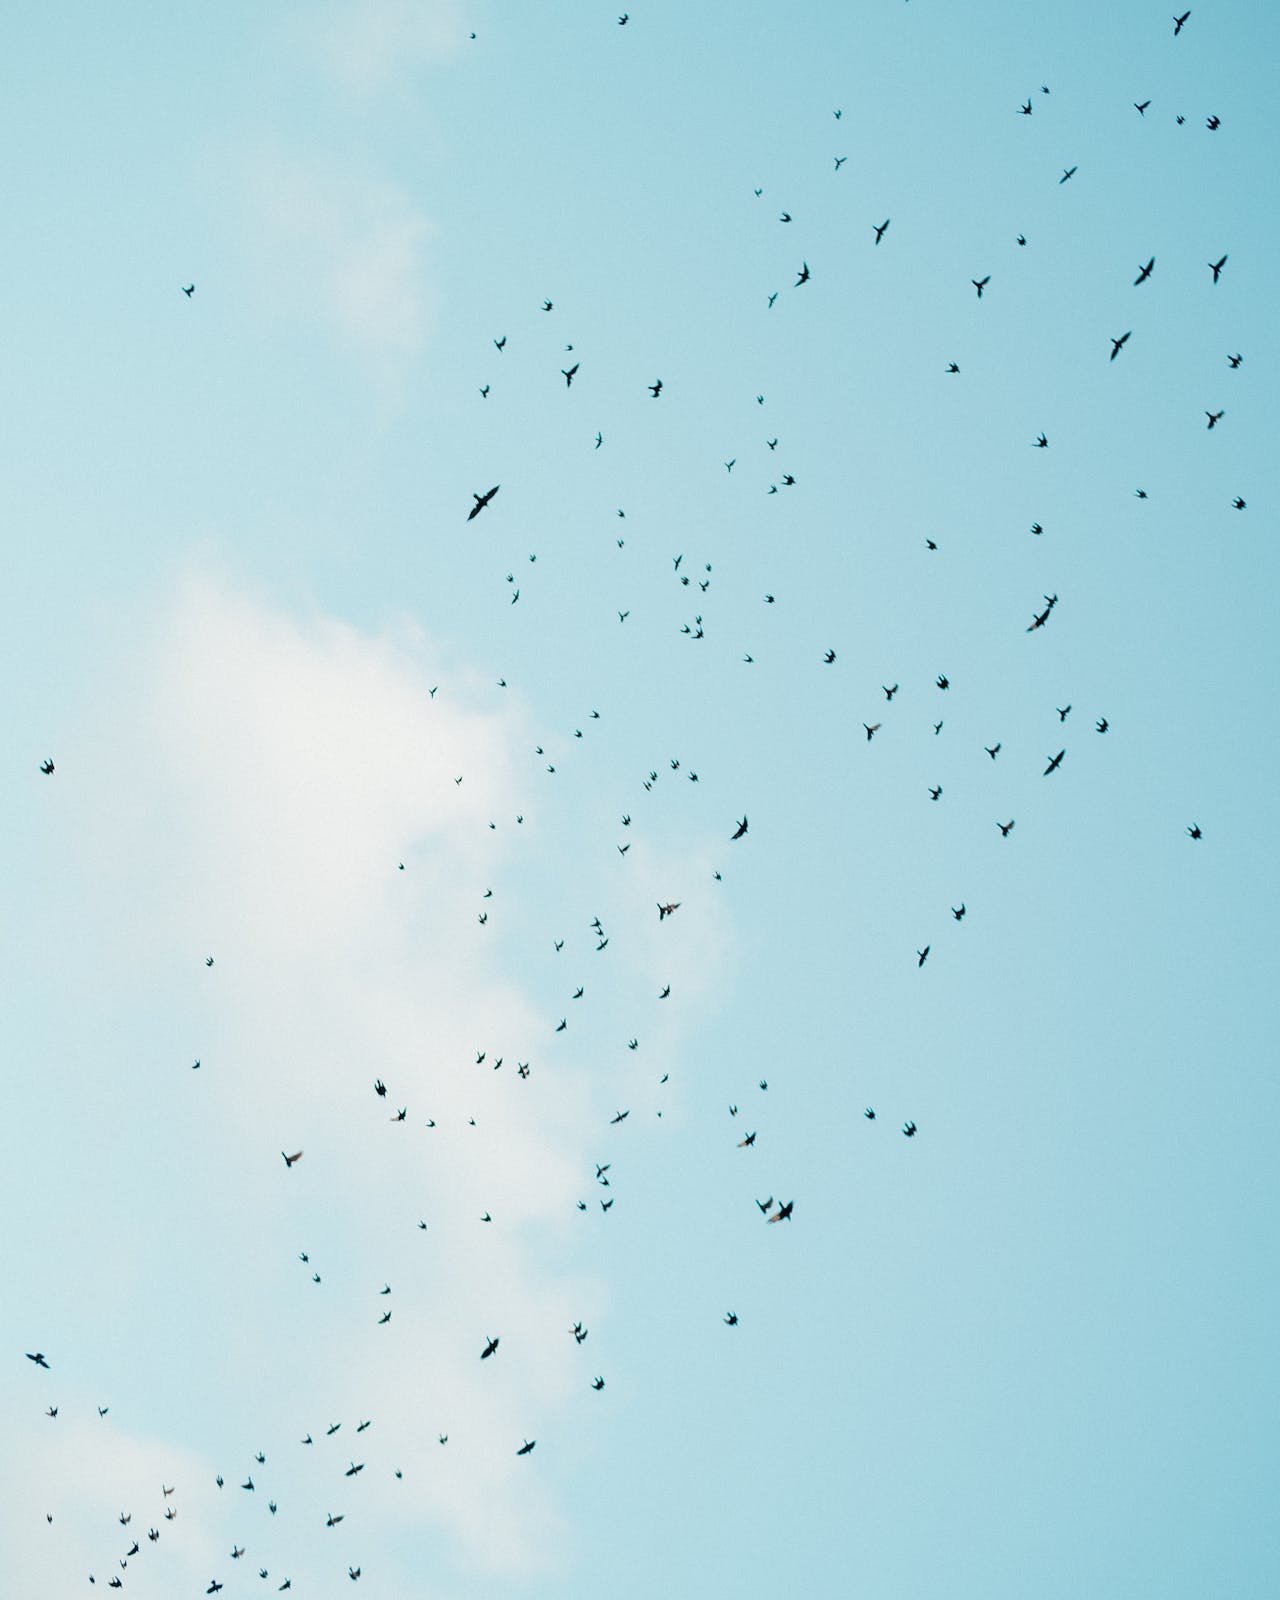 Birds flying in blue sky in daylight